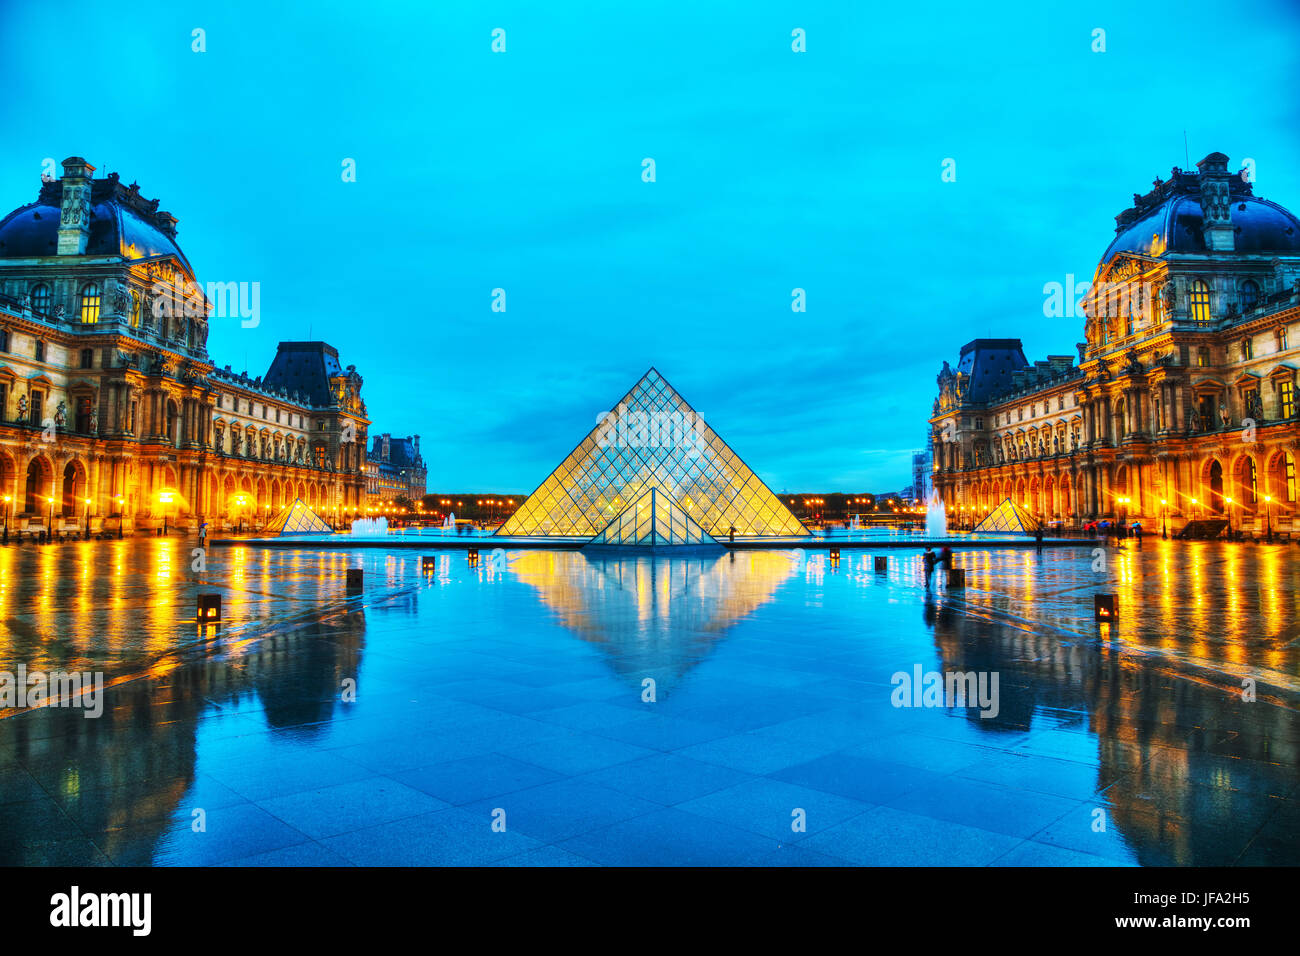 La pyramide du Louvre à Paris, France Banque D'Images